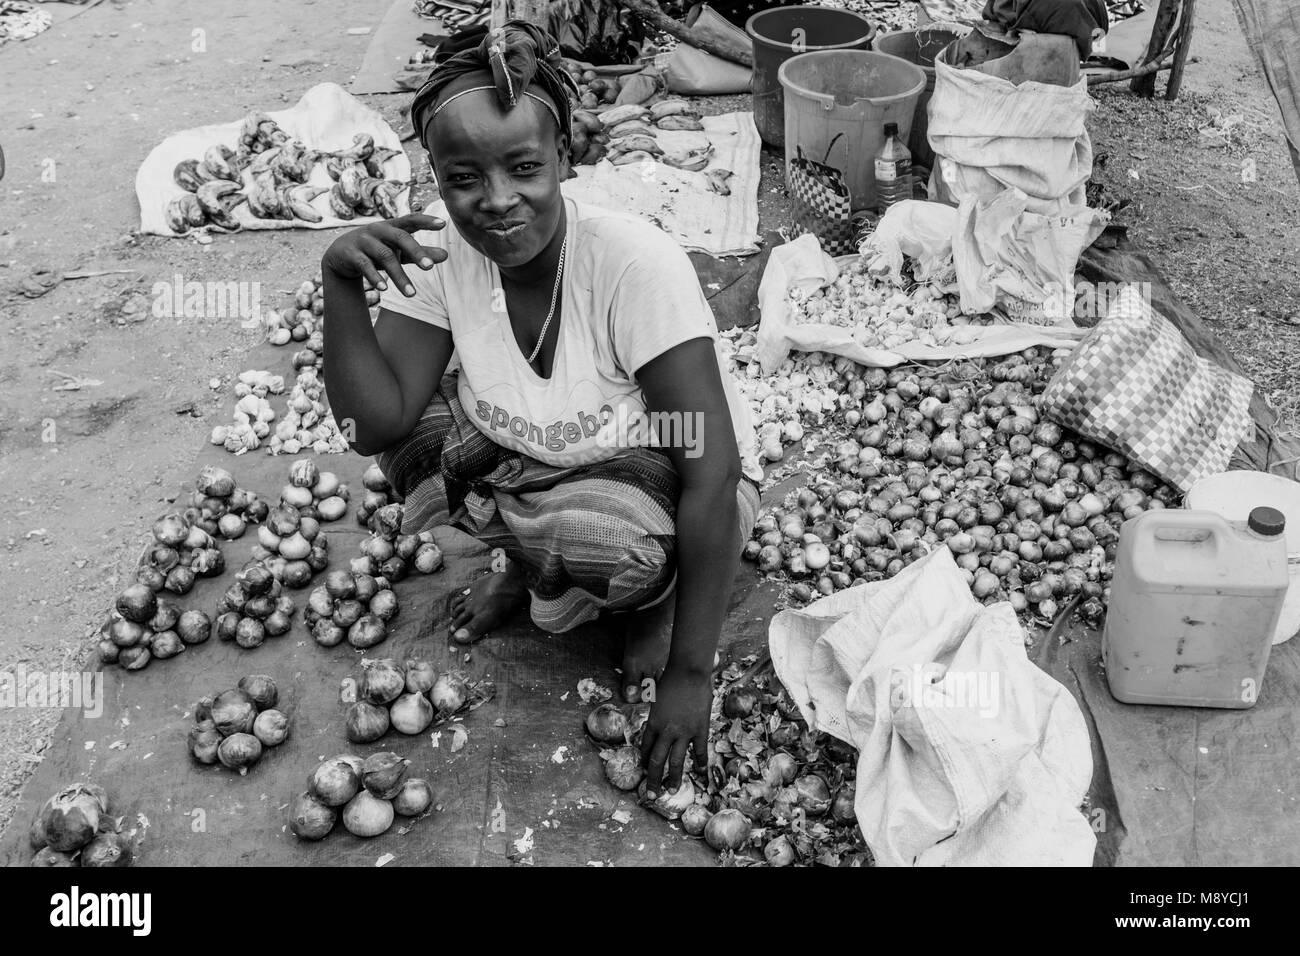 Une jeune femme vend des oignons à l'Alduba Marché Tribal, près de Keyafer, vallée de l'Omo, Ethiopie Banque D'Images